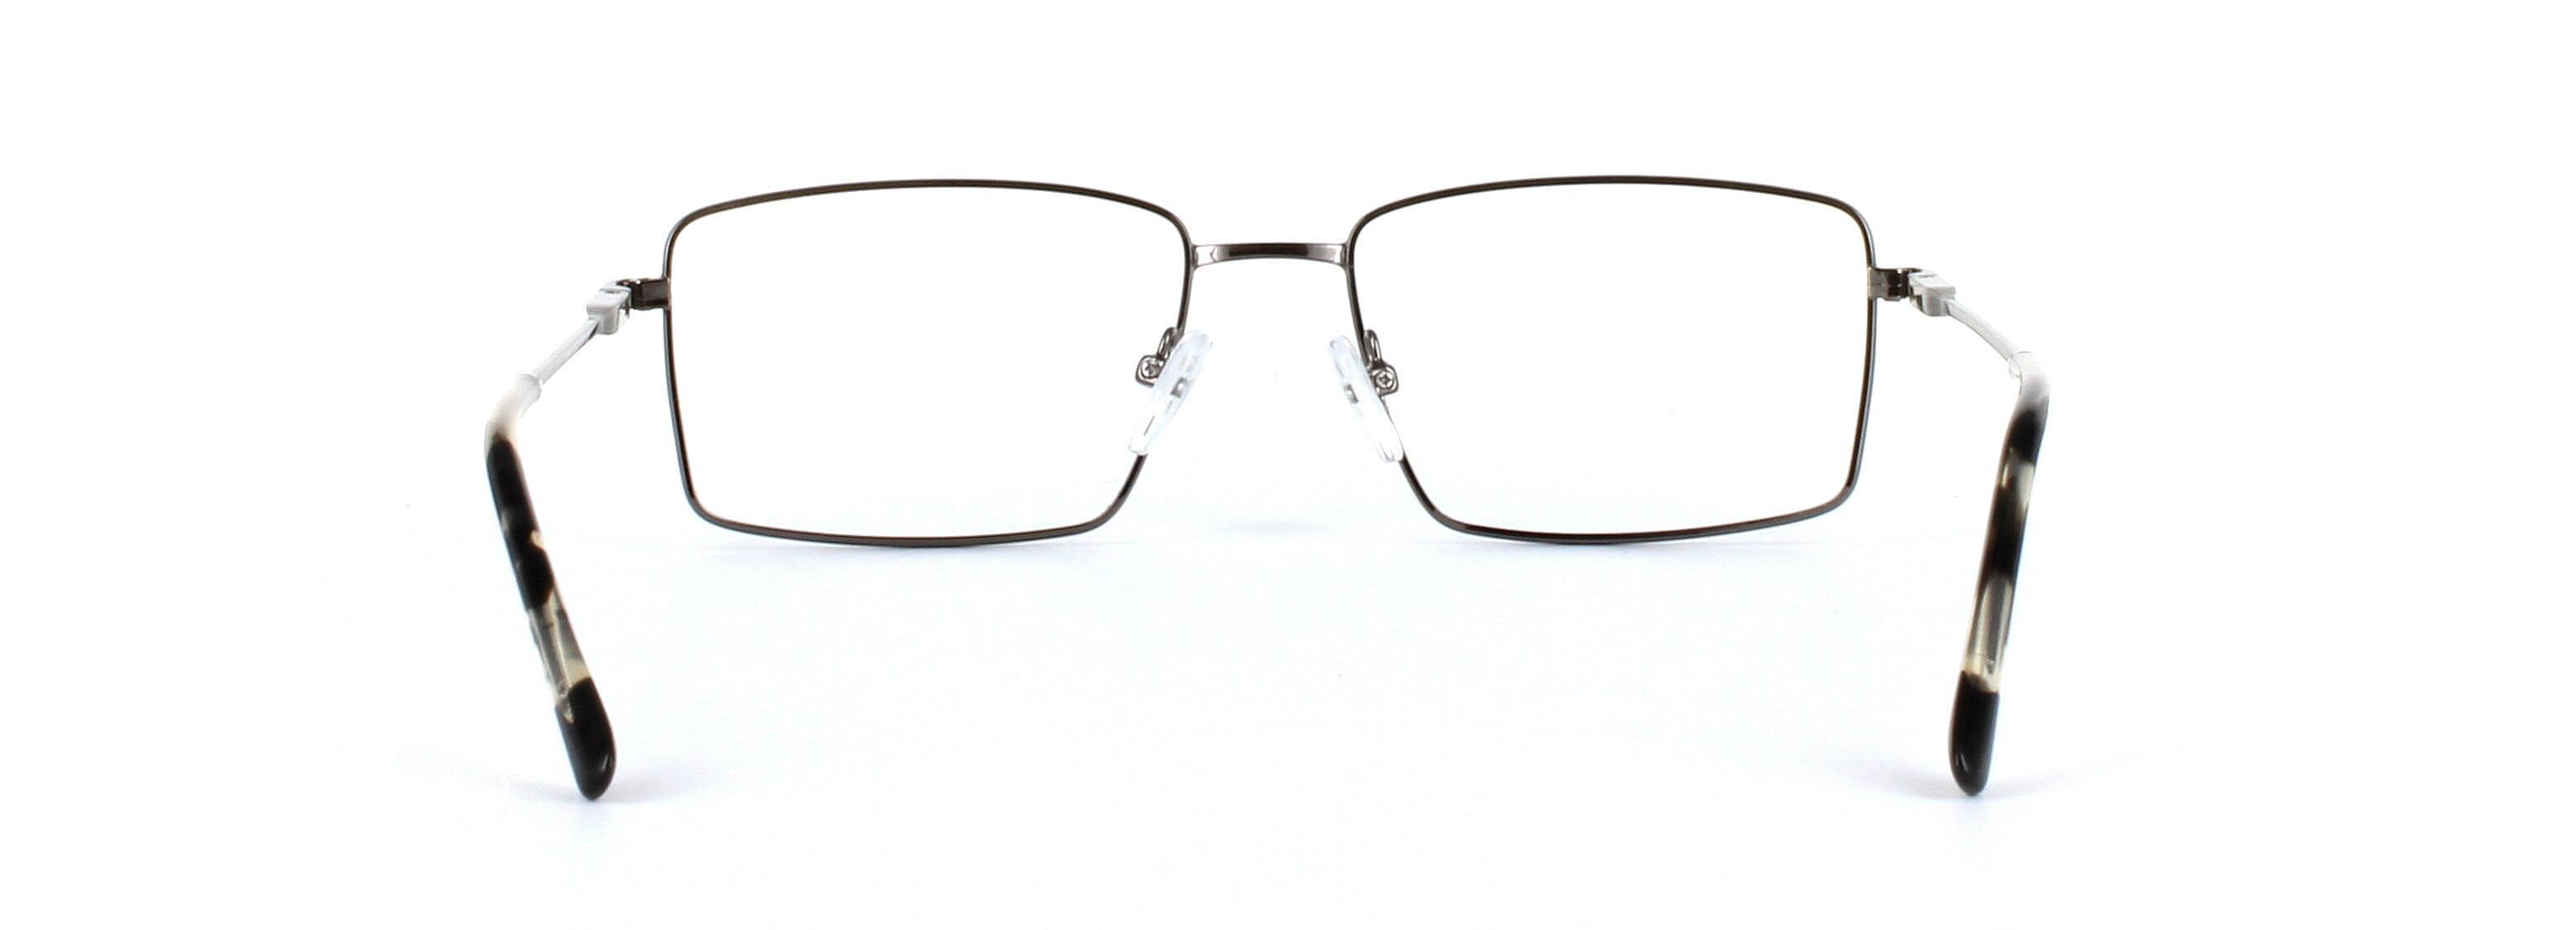 Catan Gunmetal Full Rim Rectangular Metal Glasses - Image View 3